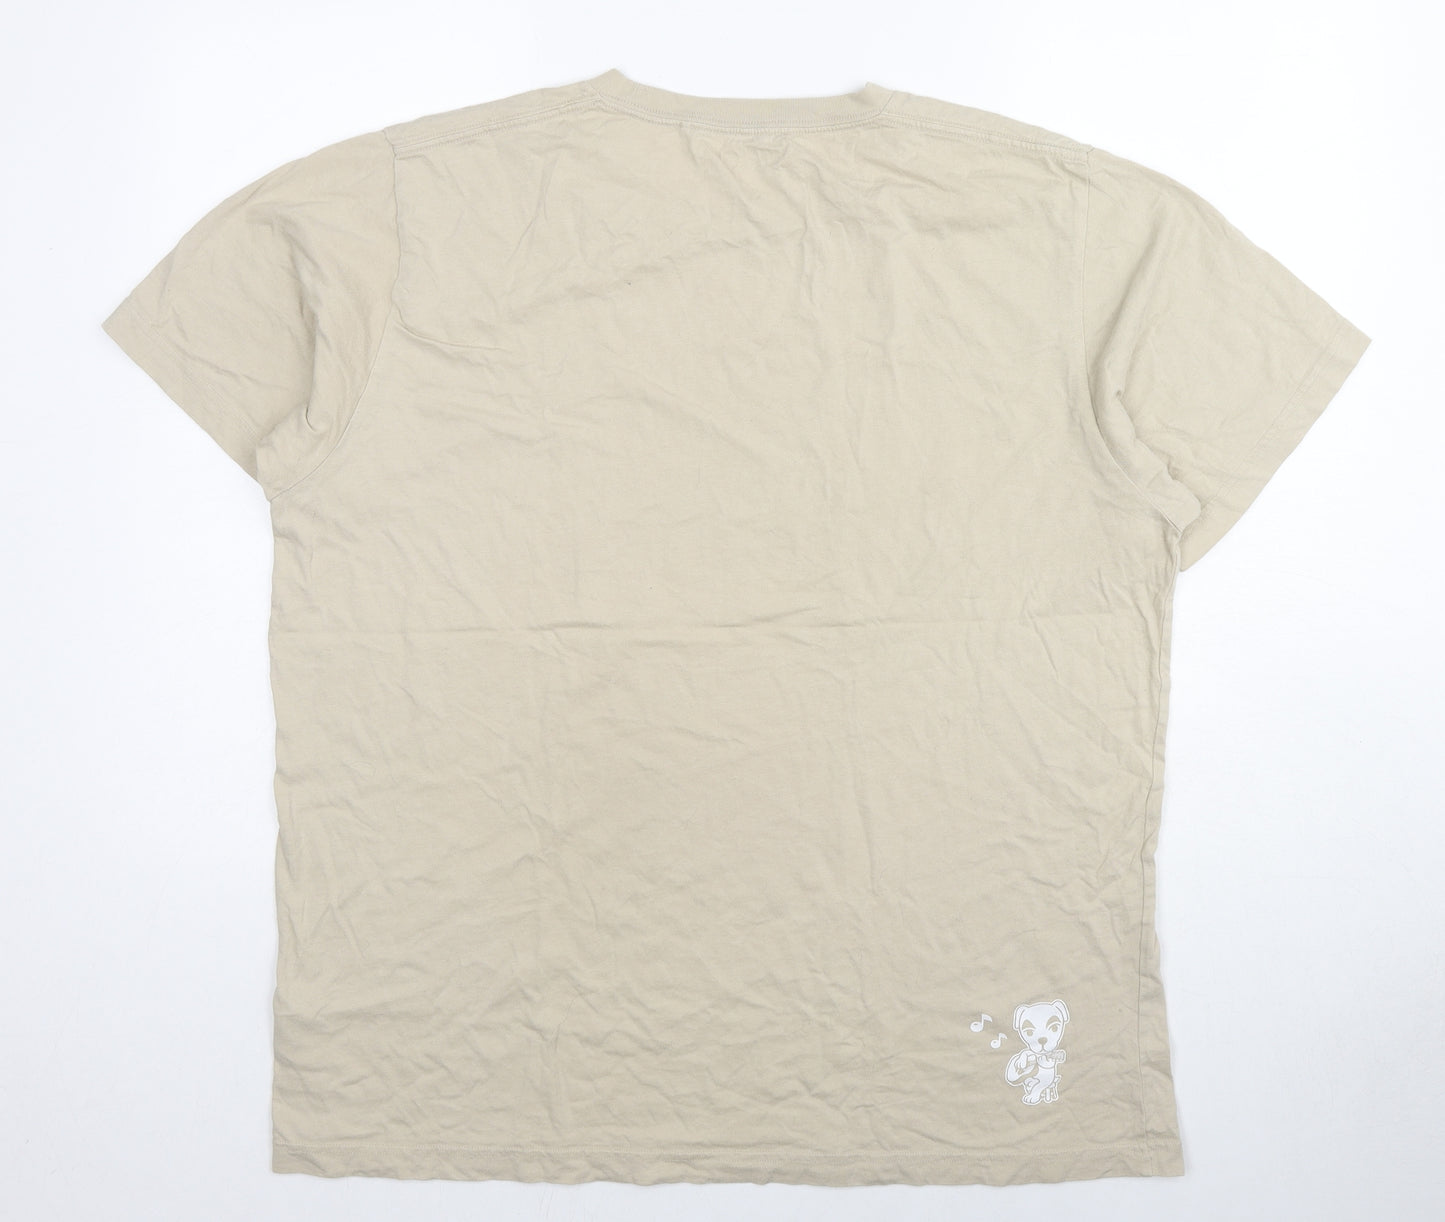 Uniqlo Mens Beige Cotton T-Shirt Size XL Crew Neck